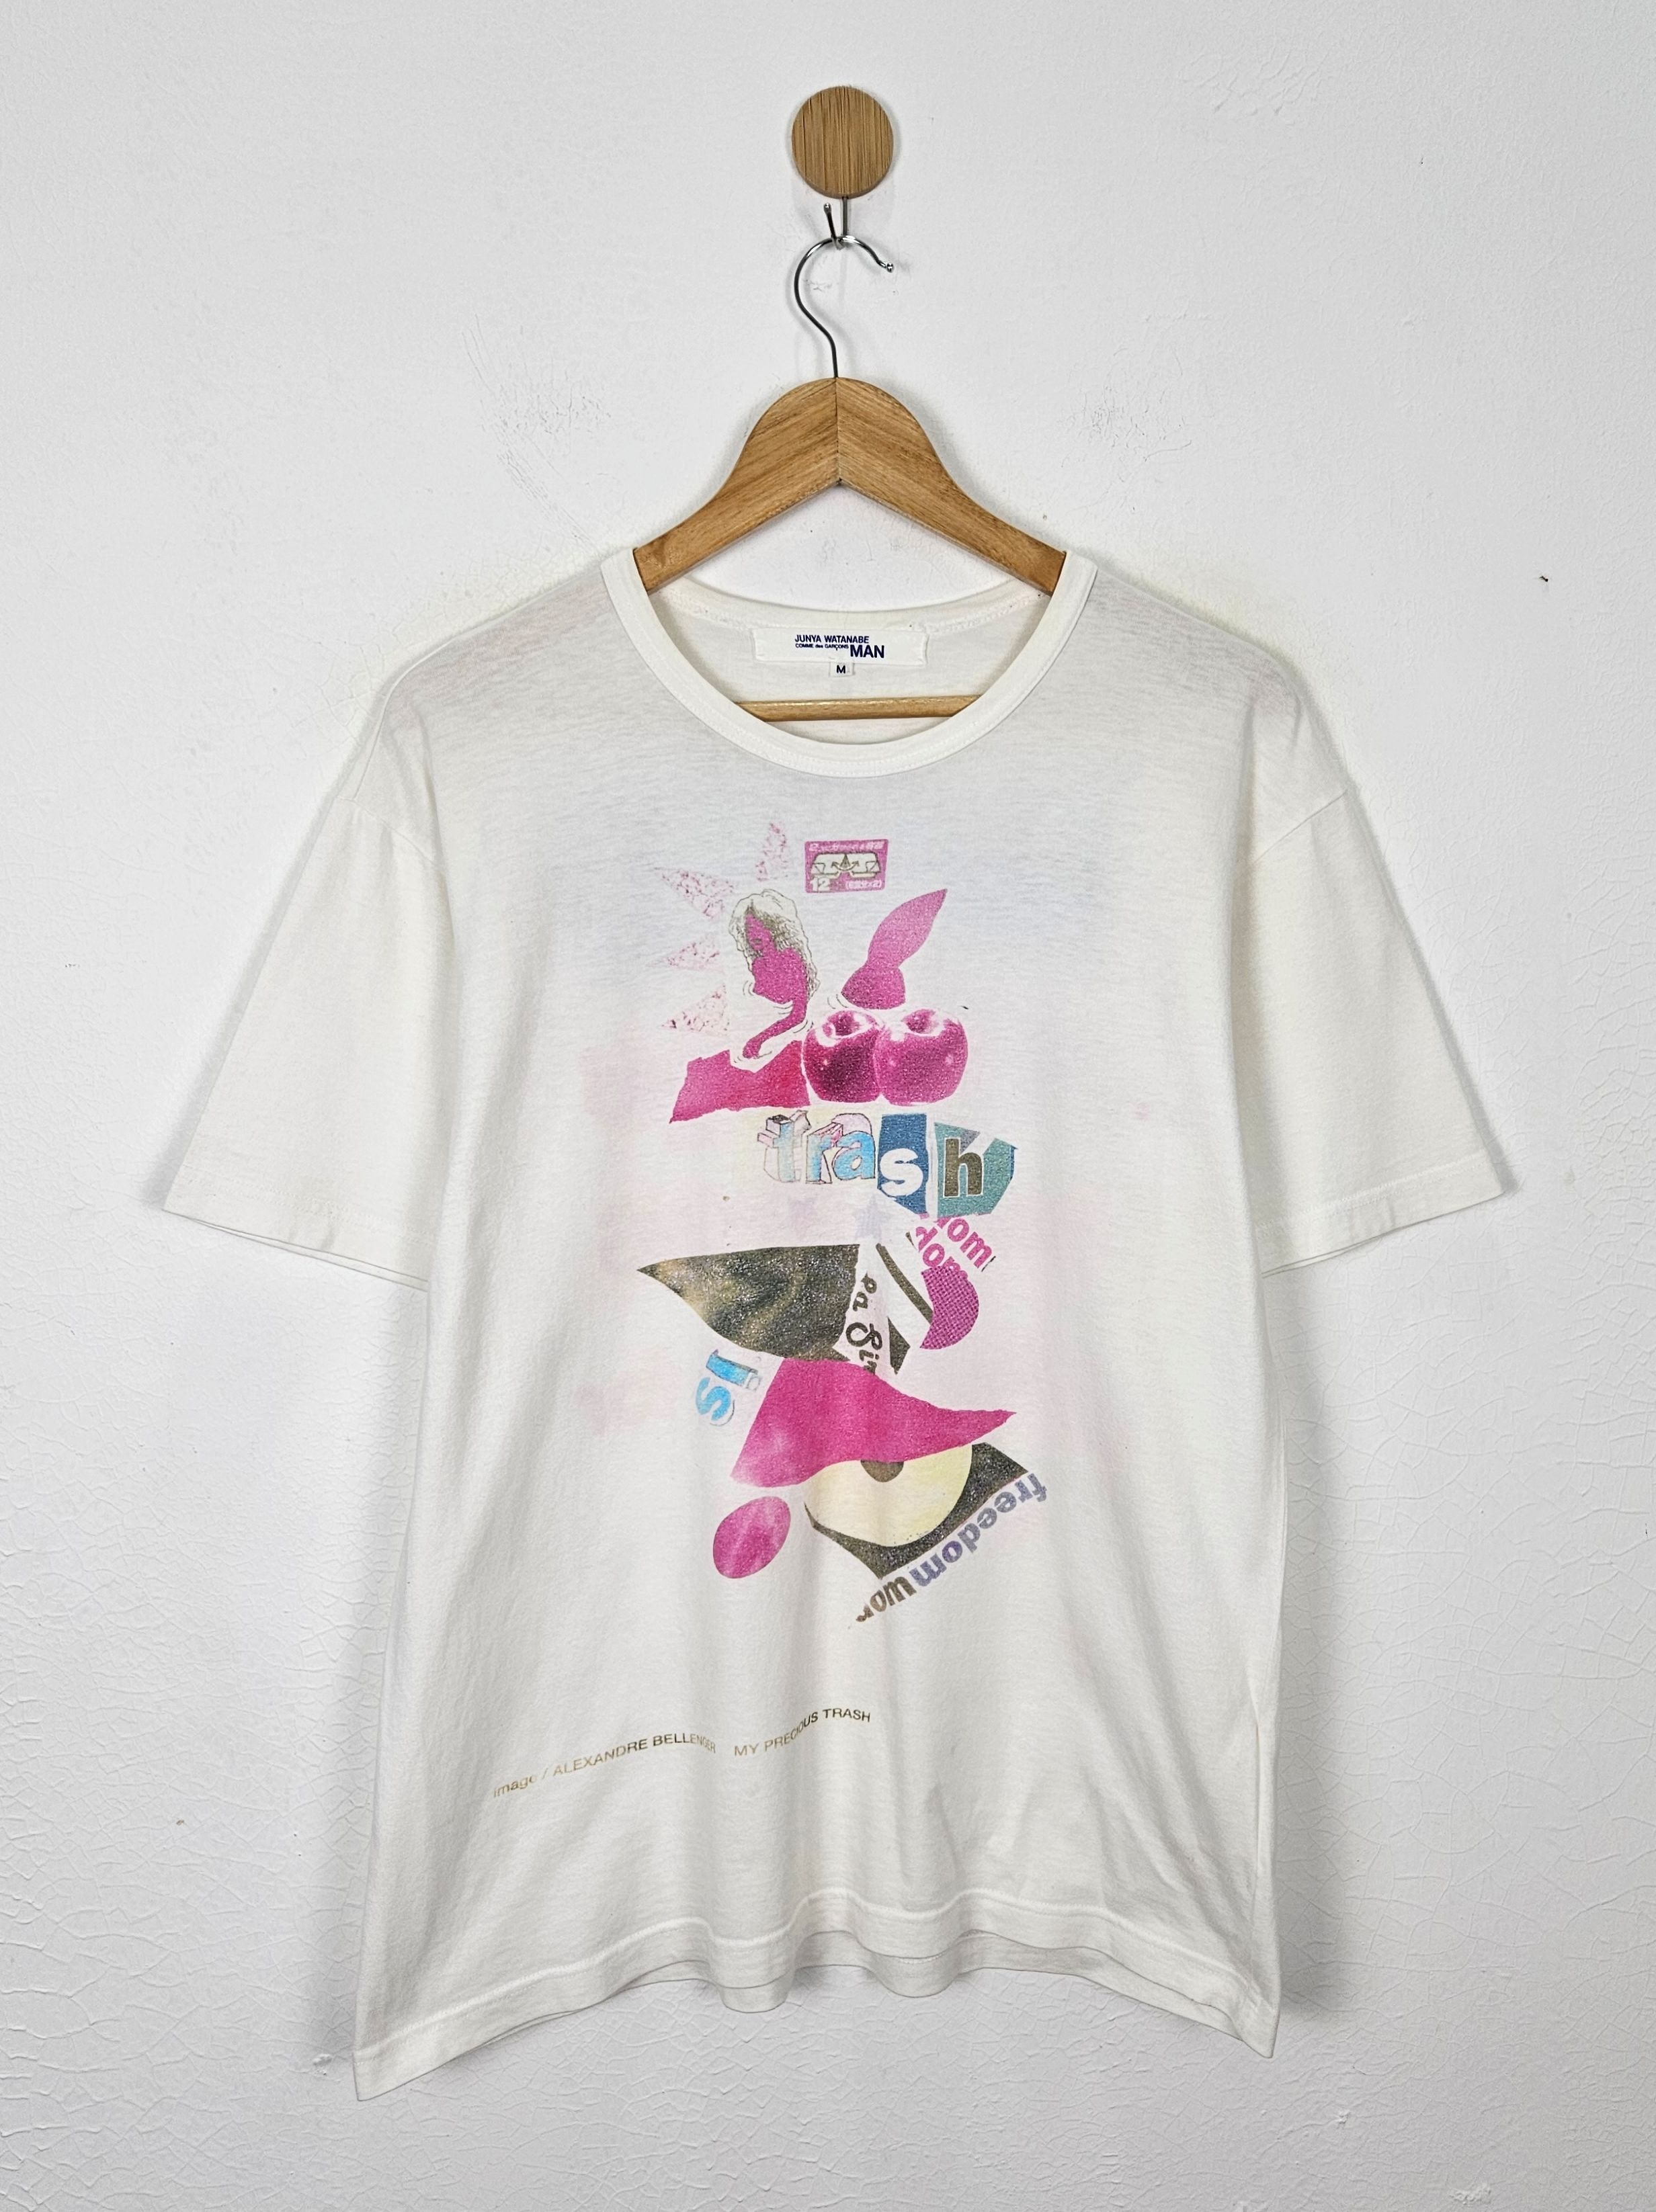 Comme des Garcons Junya Watanabe Dazed & Confused shirt - 1